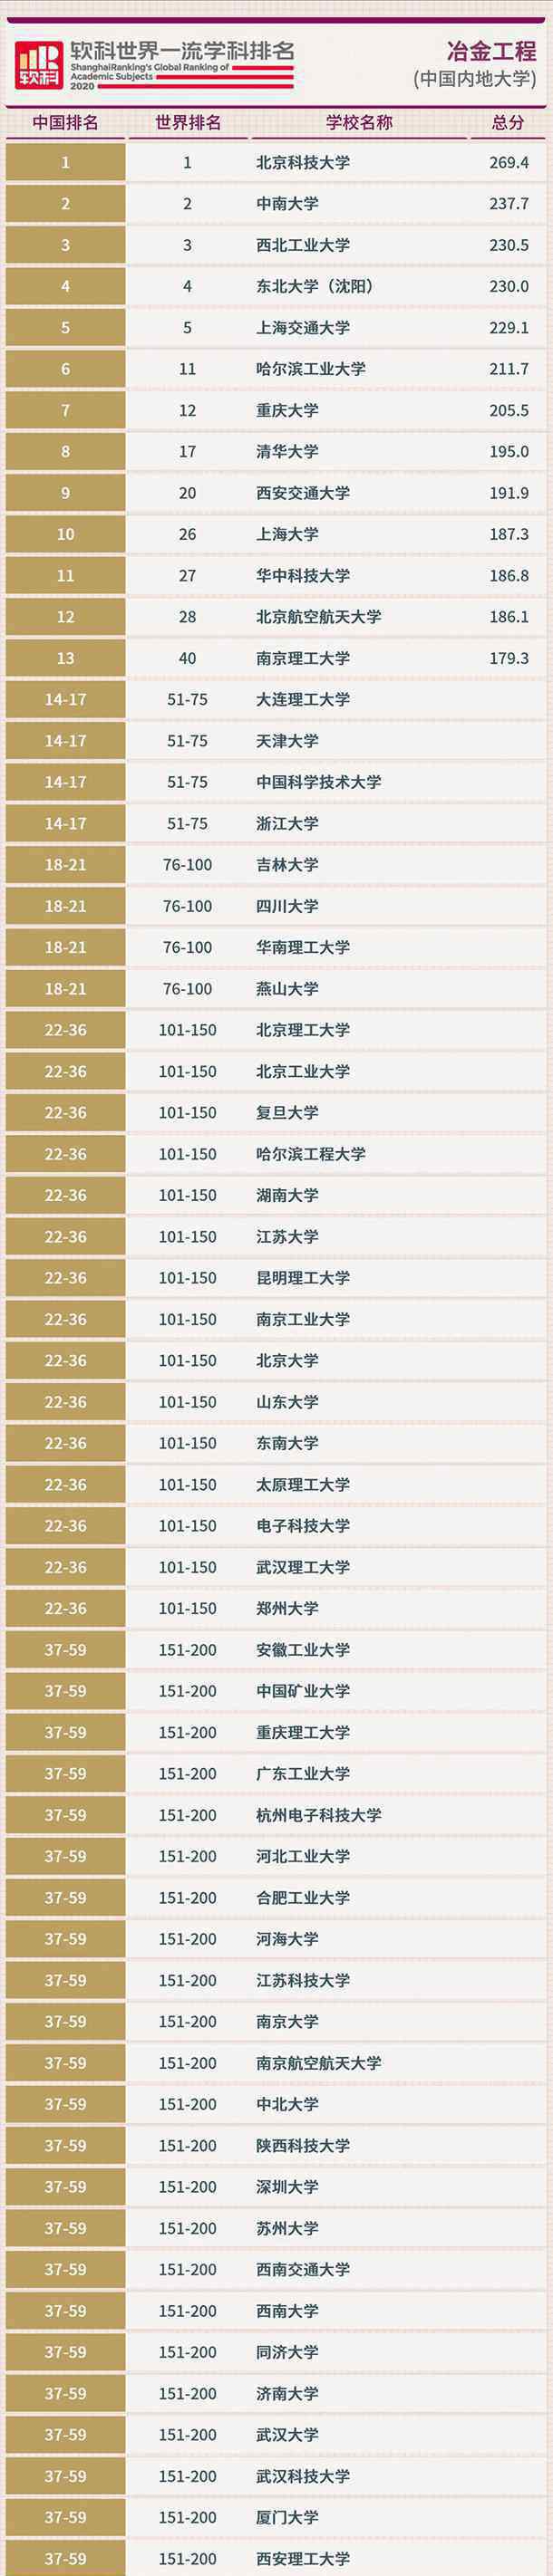 学科排名 2020软科中国最好学科排名完整版